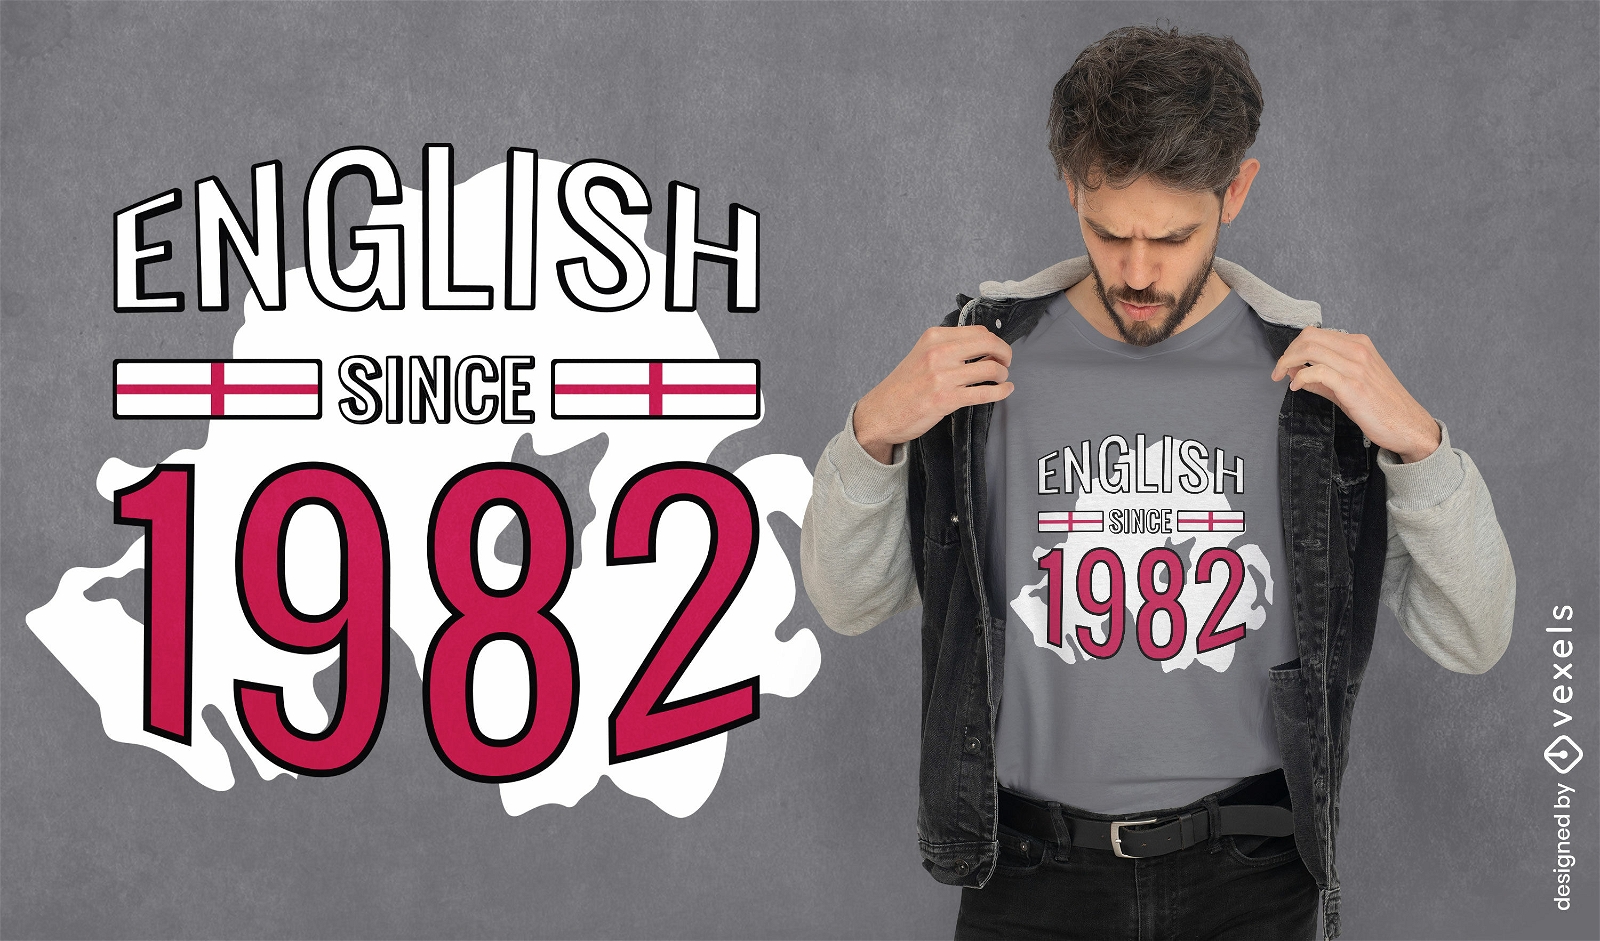 Inglés desde 1982 cita diseño de camiseta.